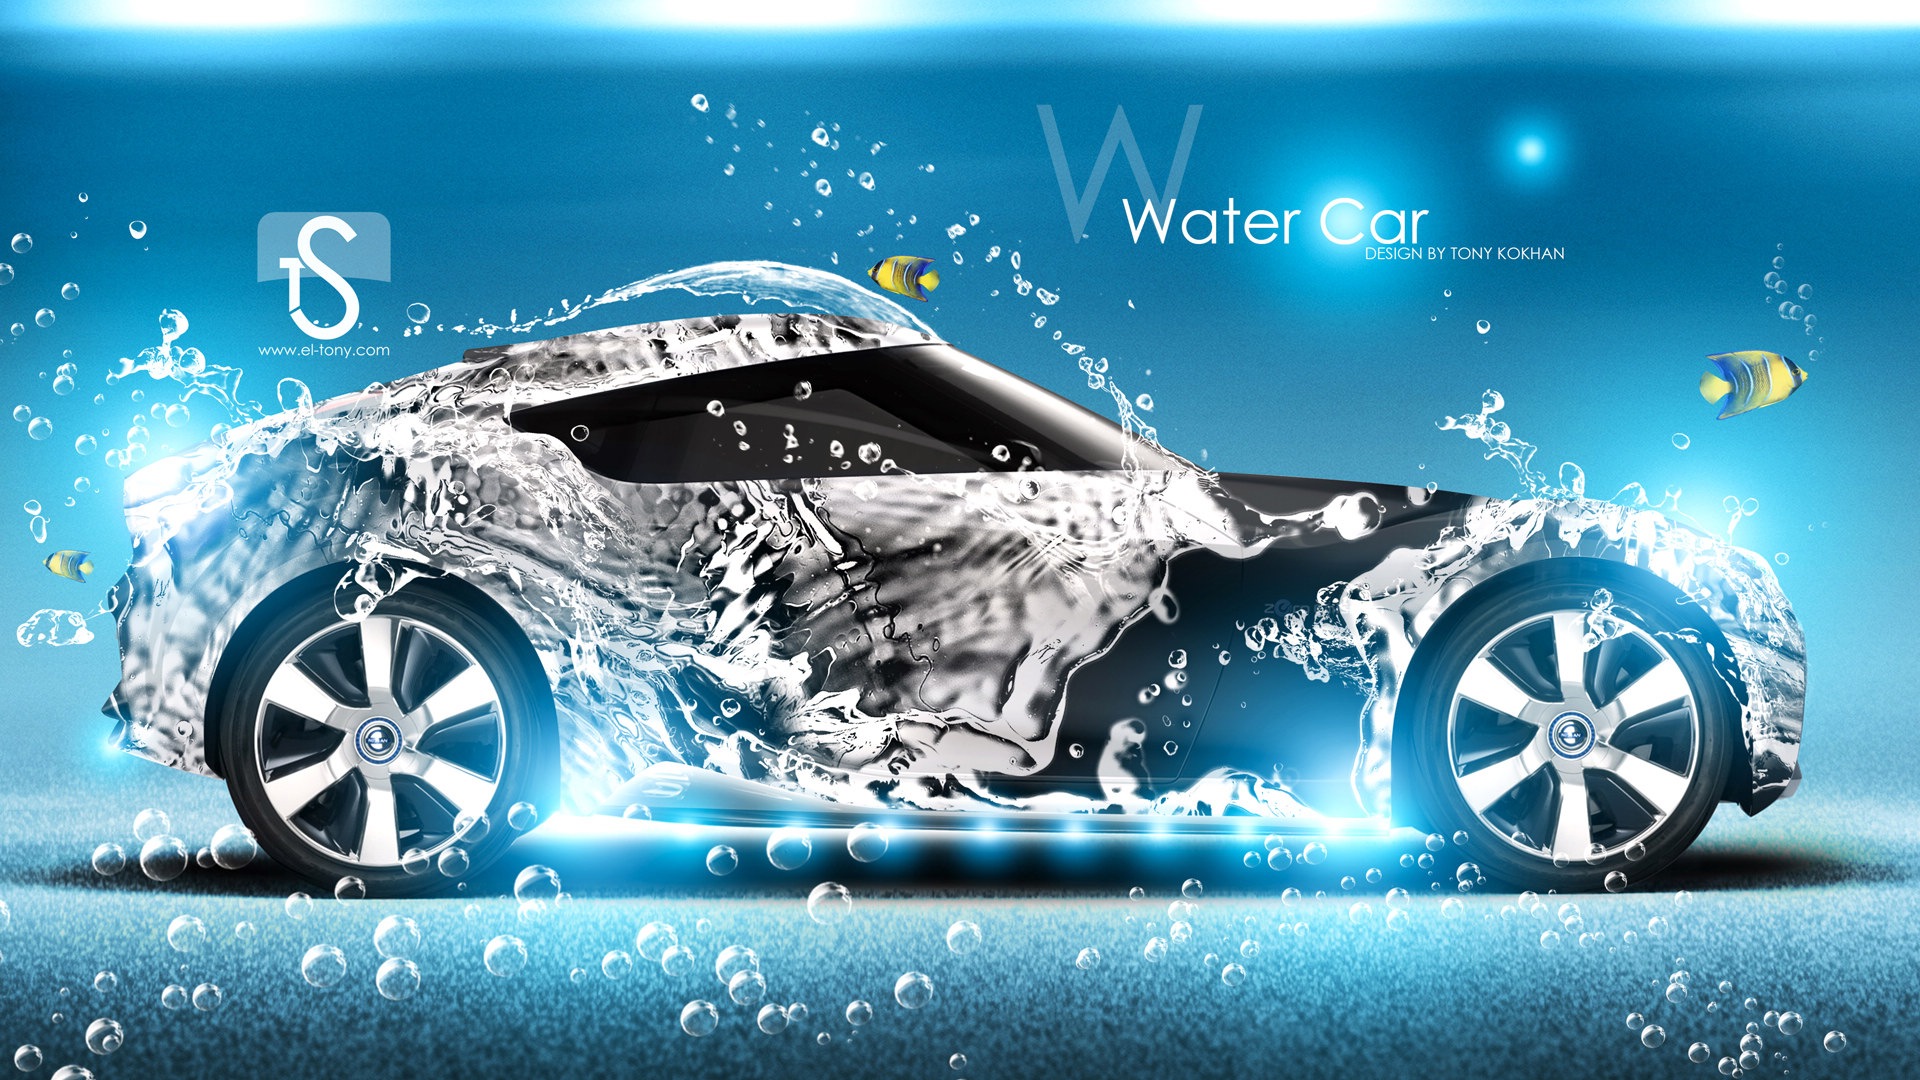 水滴のしぶき 美しい車創造的なデザインの壁紙 5 19x1080 壁紙ダウンロード 水滴のしぶき 美しい車創造的なデザインの壁紙 自動車 壁紙 V3の壁紙